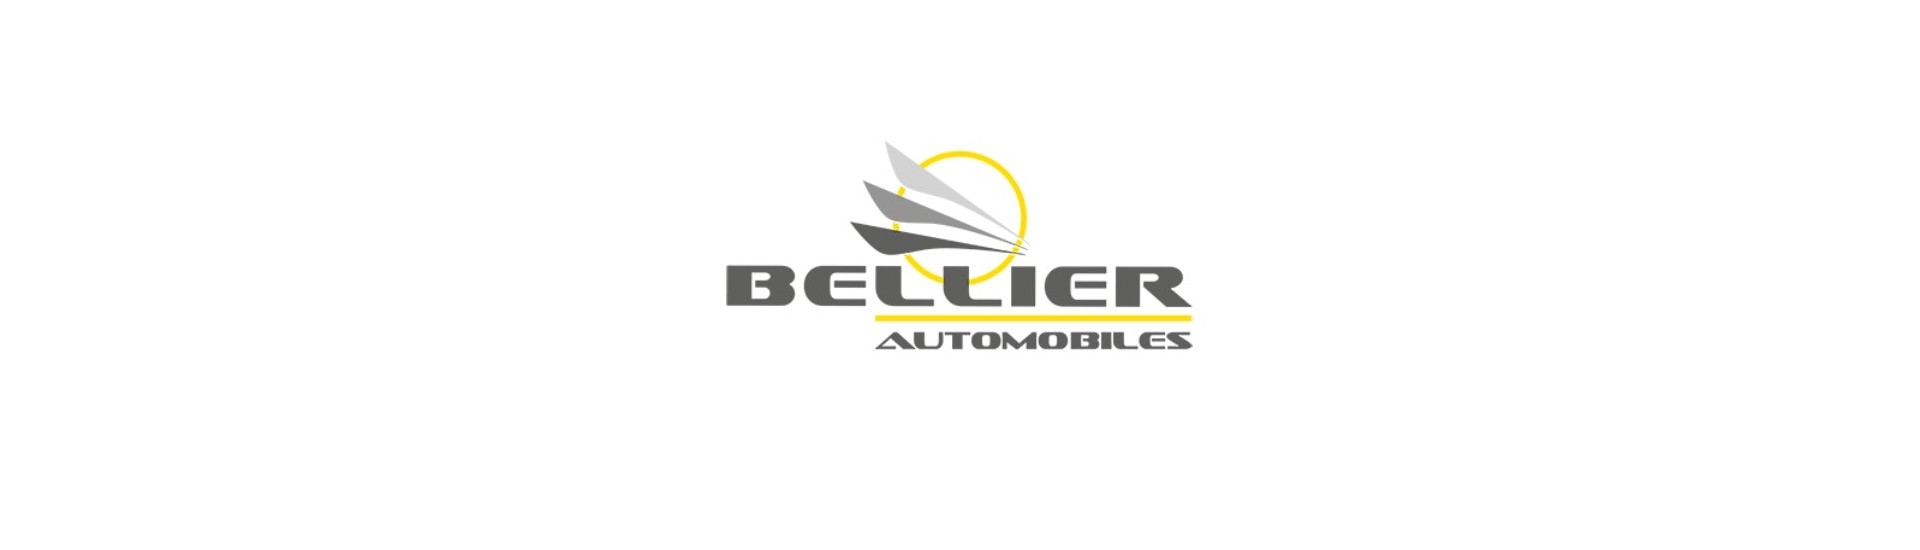 scarico flessibile al miglior prezzo per auto senza permesso Bellier